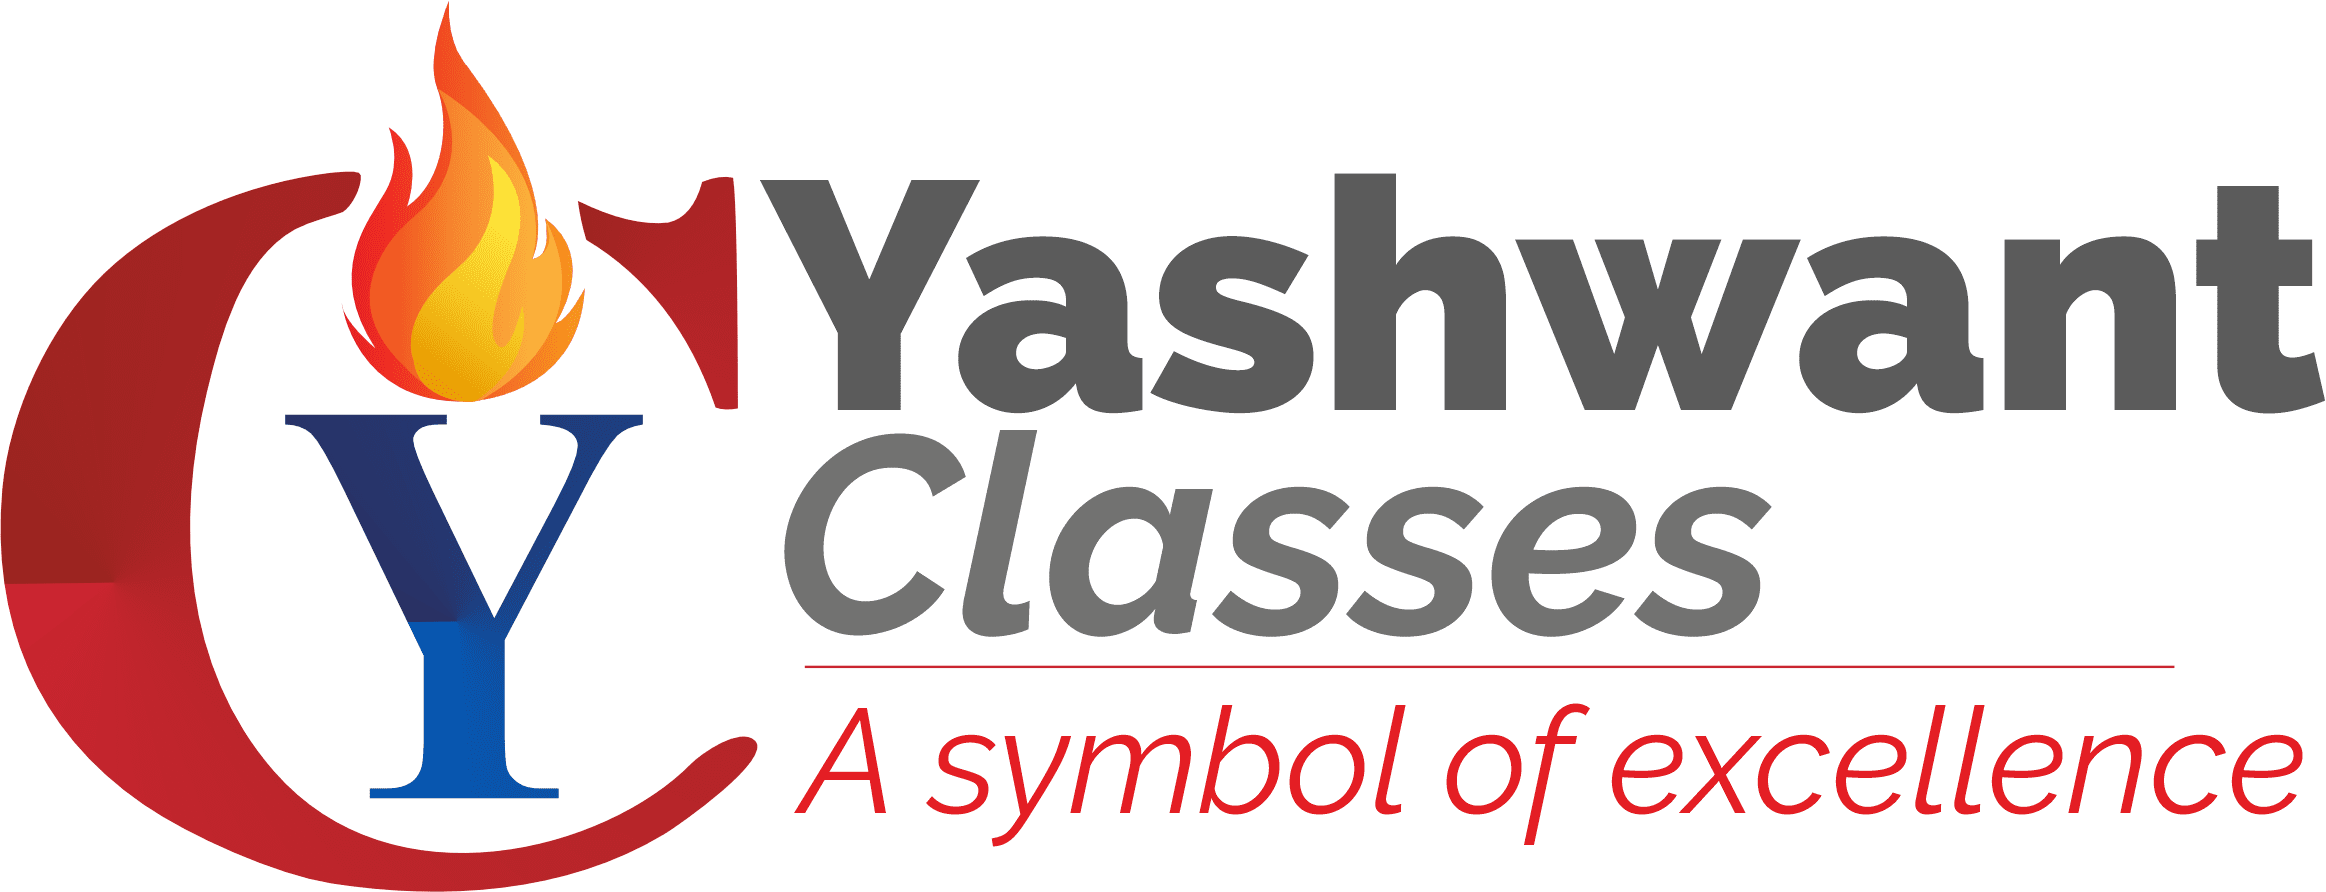 Yashwant Classes, Nashik